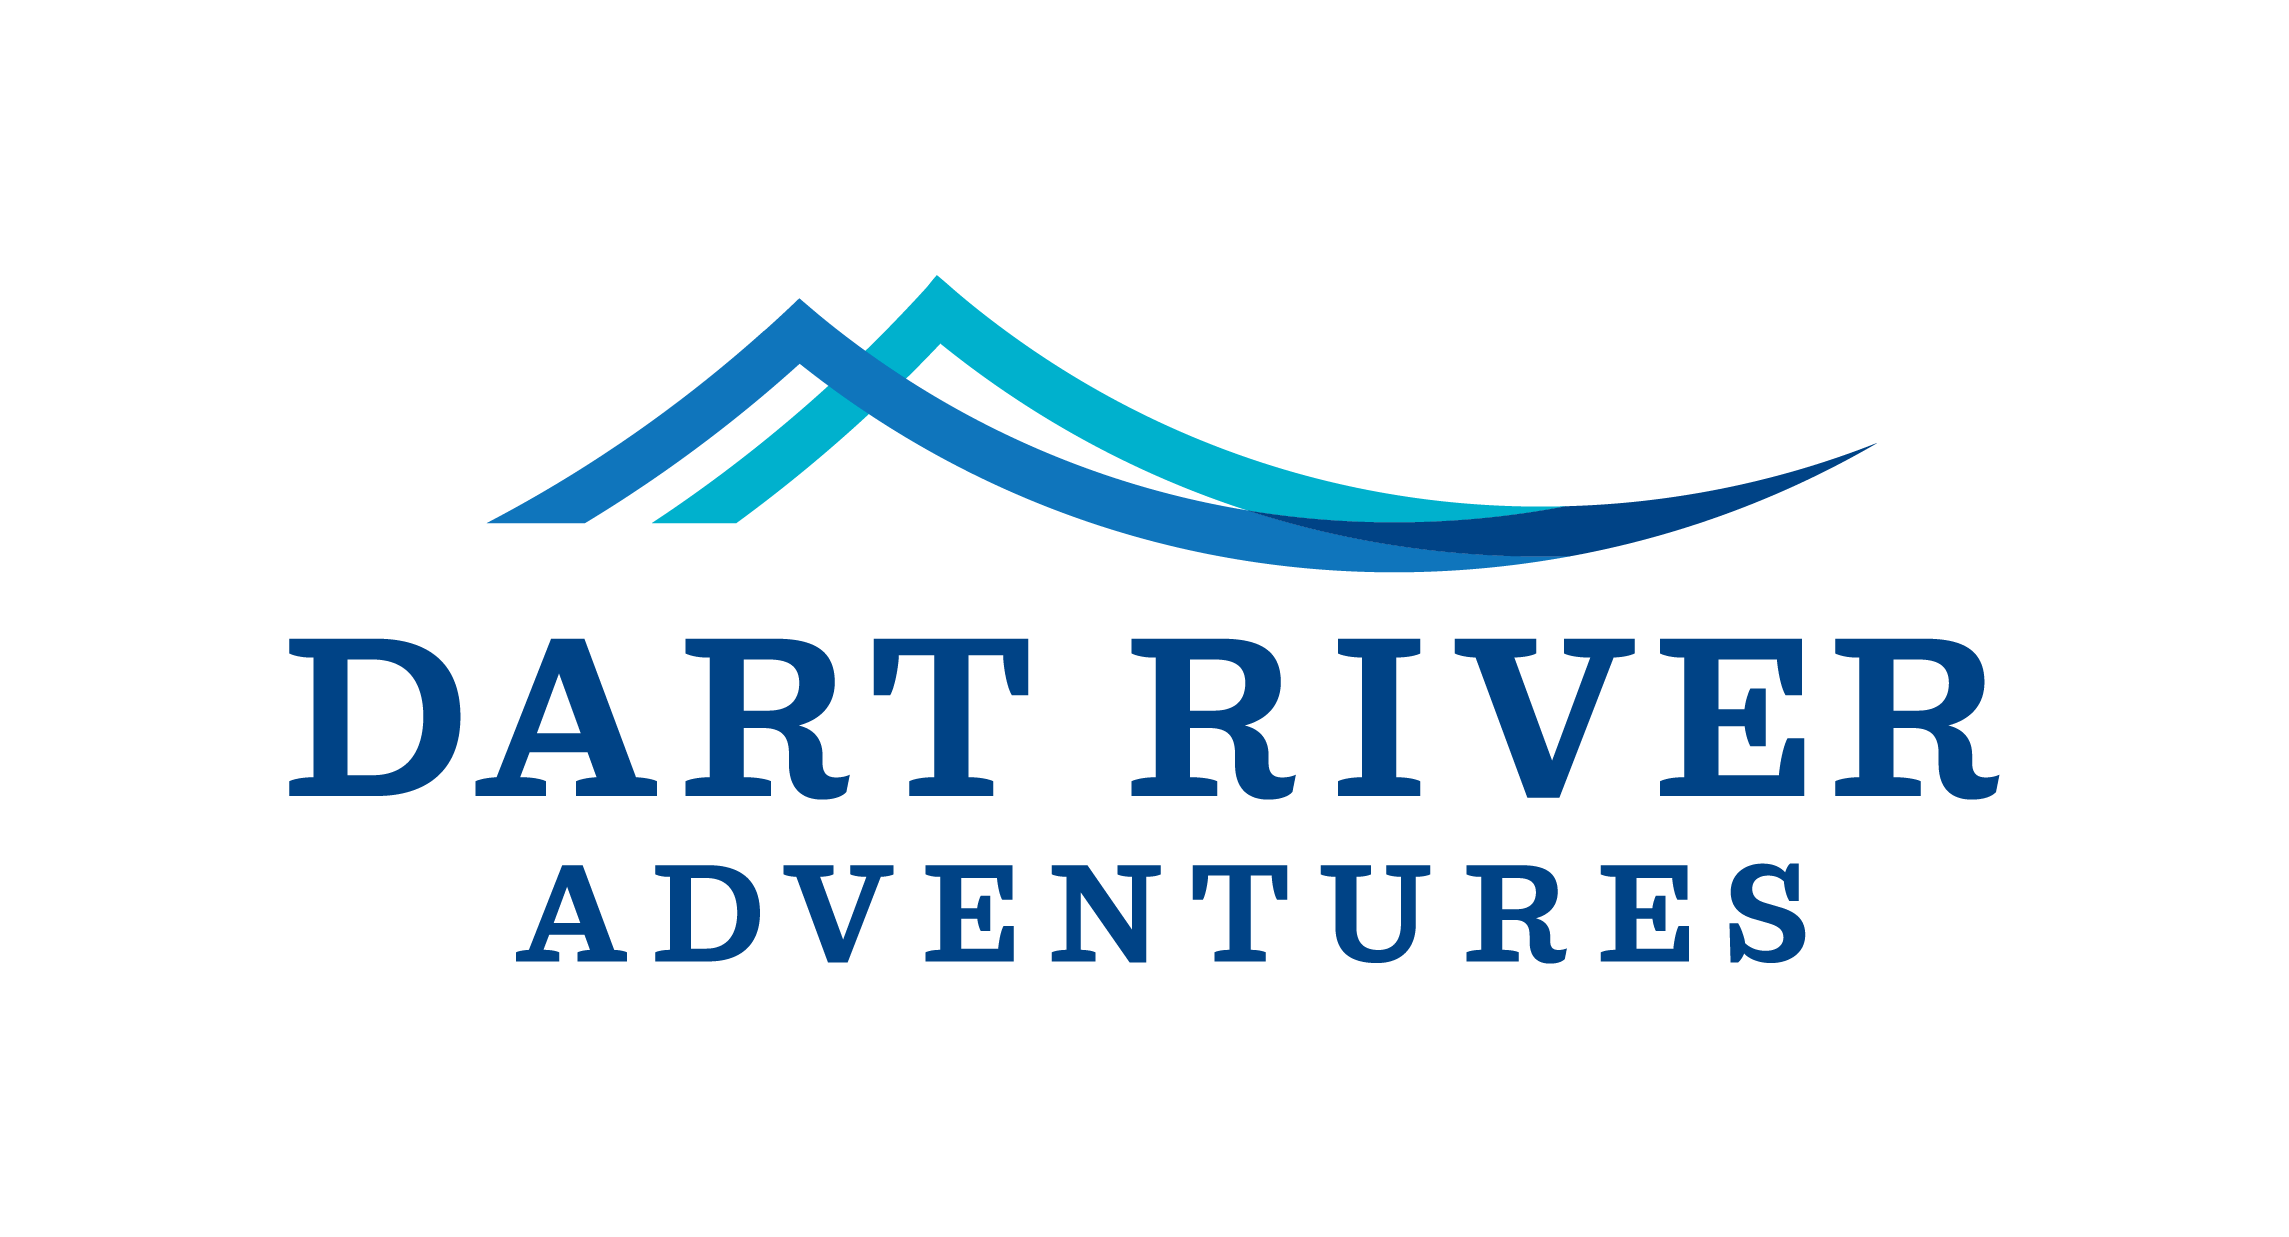 
Dart River Adventures